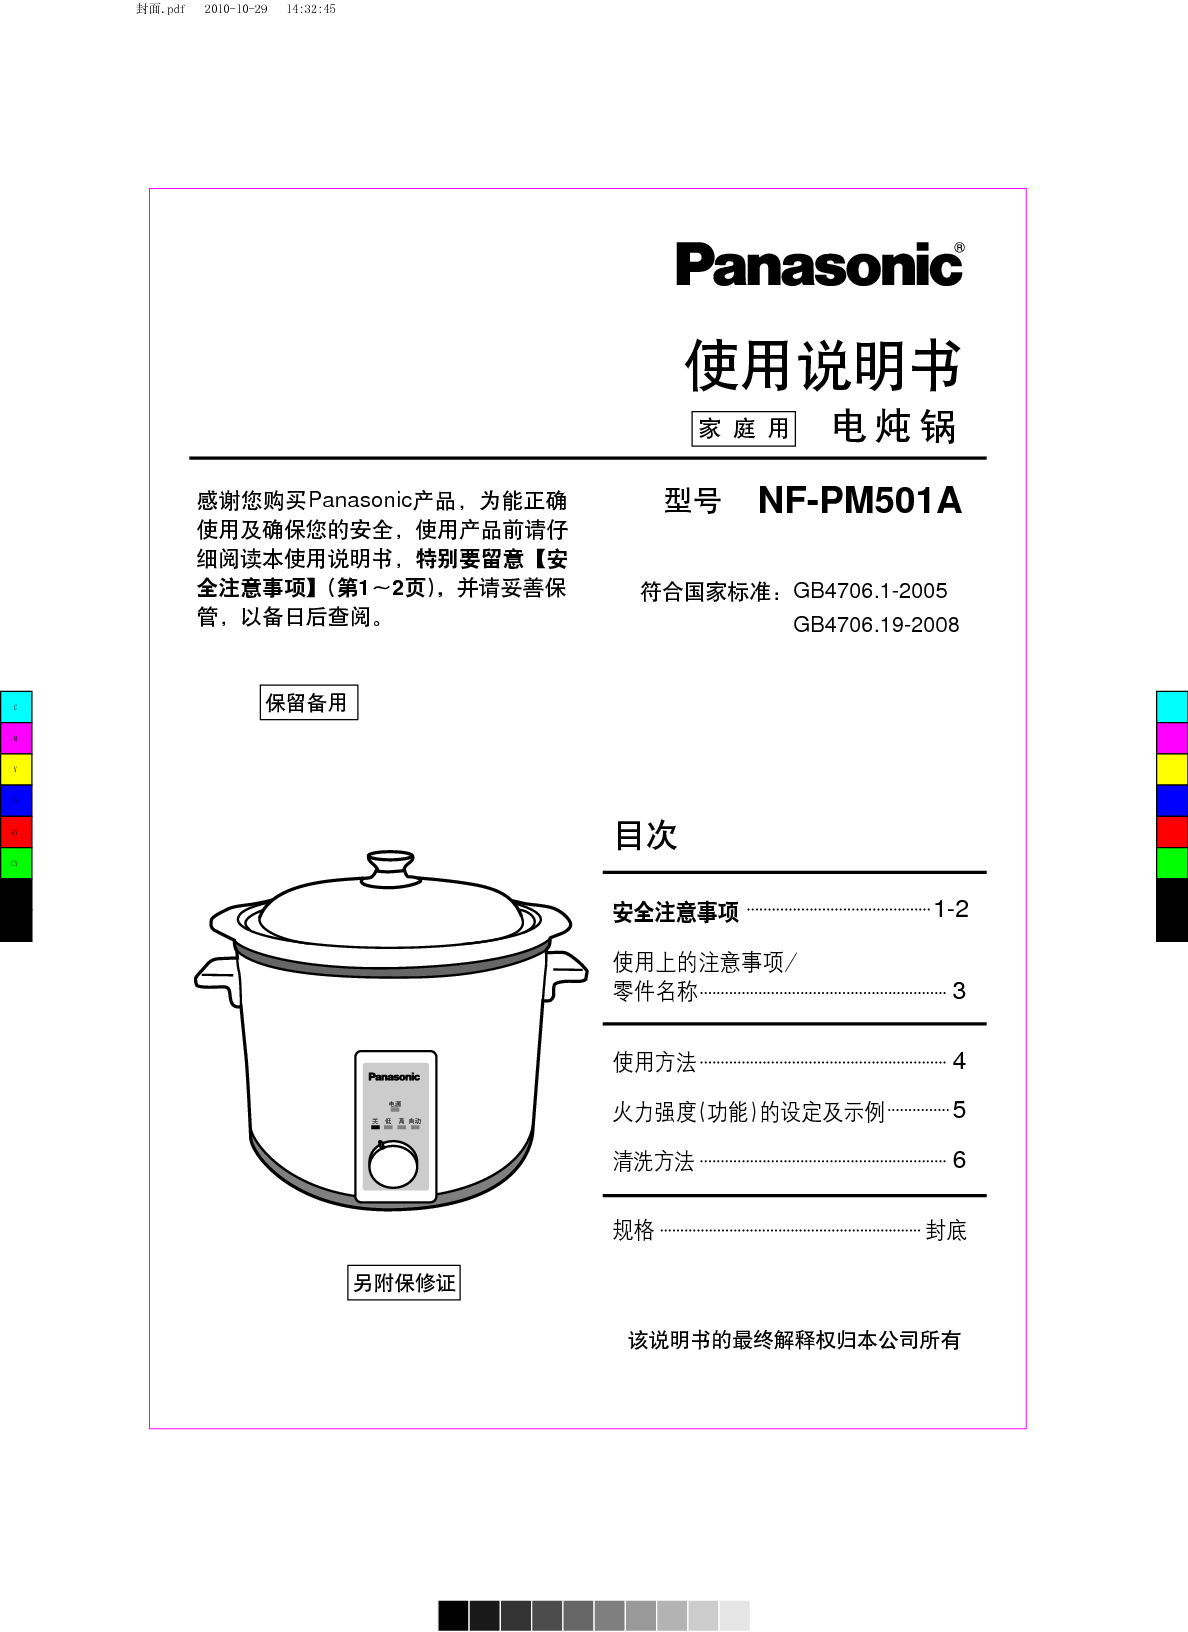 松下 Panasonic NF-PM501A 说明书 封面